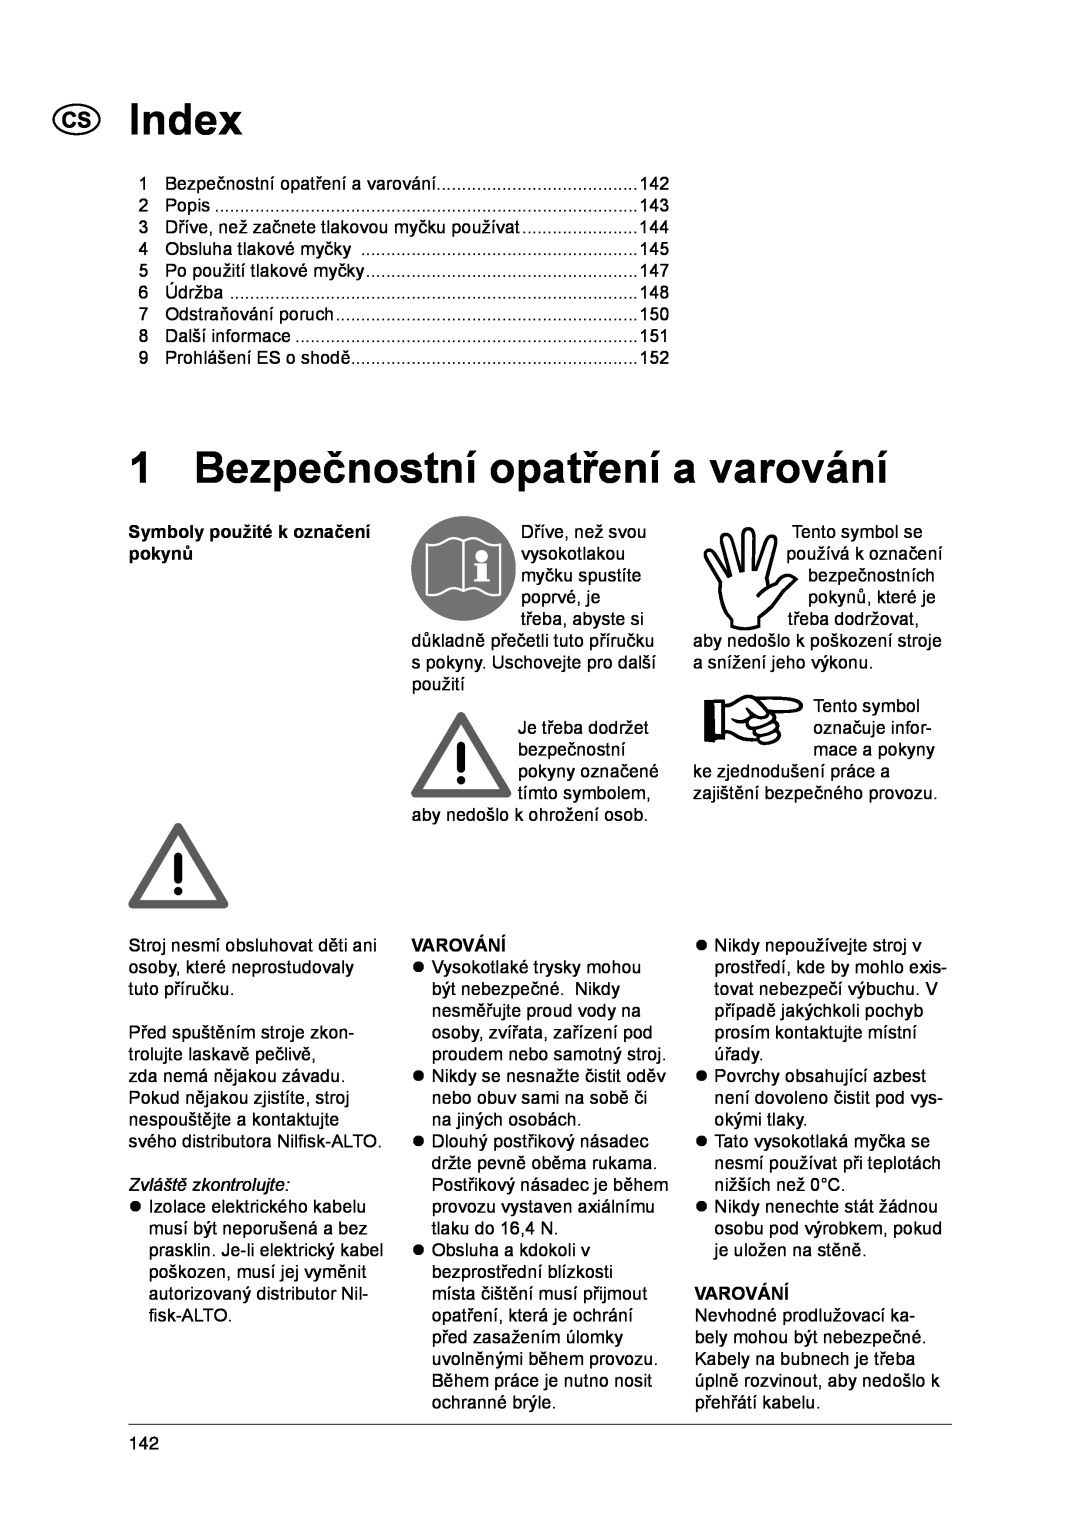 Nilfisk-ALTO 1-20 XT manual Index, Bezpečnostní opatření a varování, Symboly použité k označení pokynů, Varování 